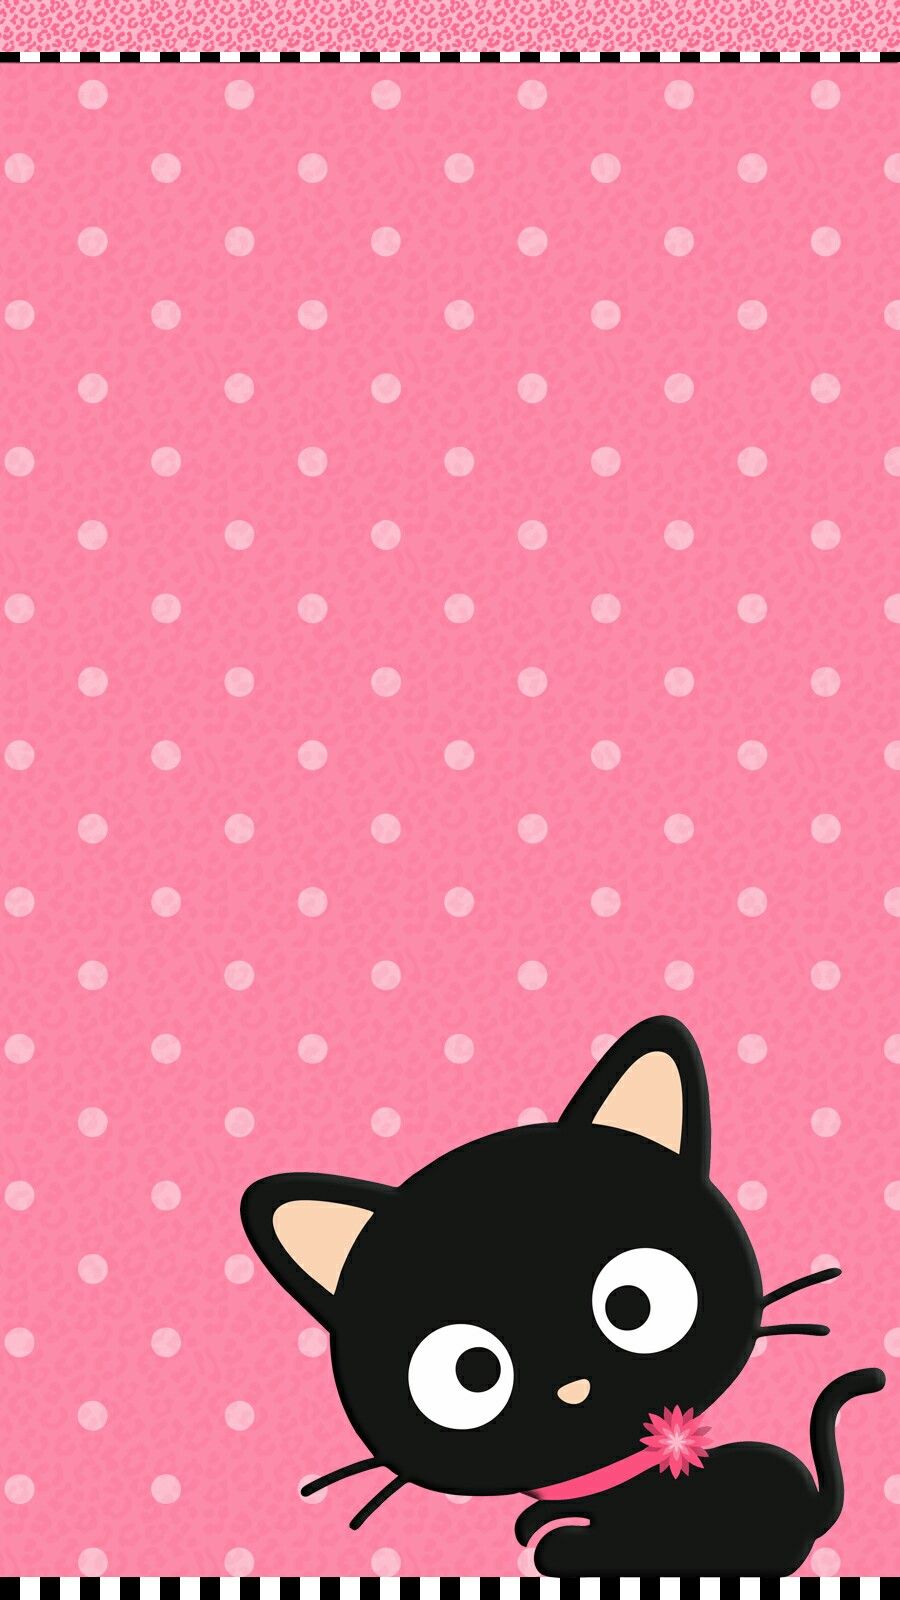 simpatico gatto live wallpaper,rosa,cartone animato,modello,gatto nero,a pois